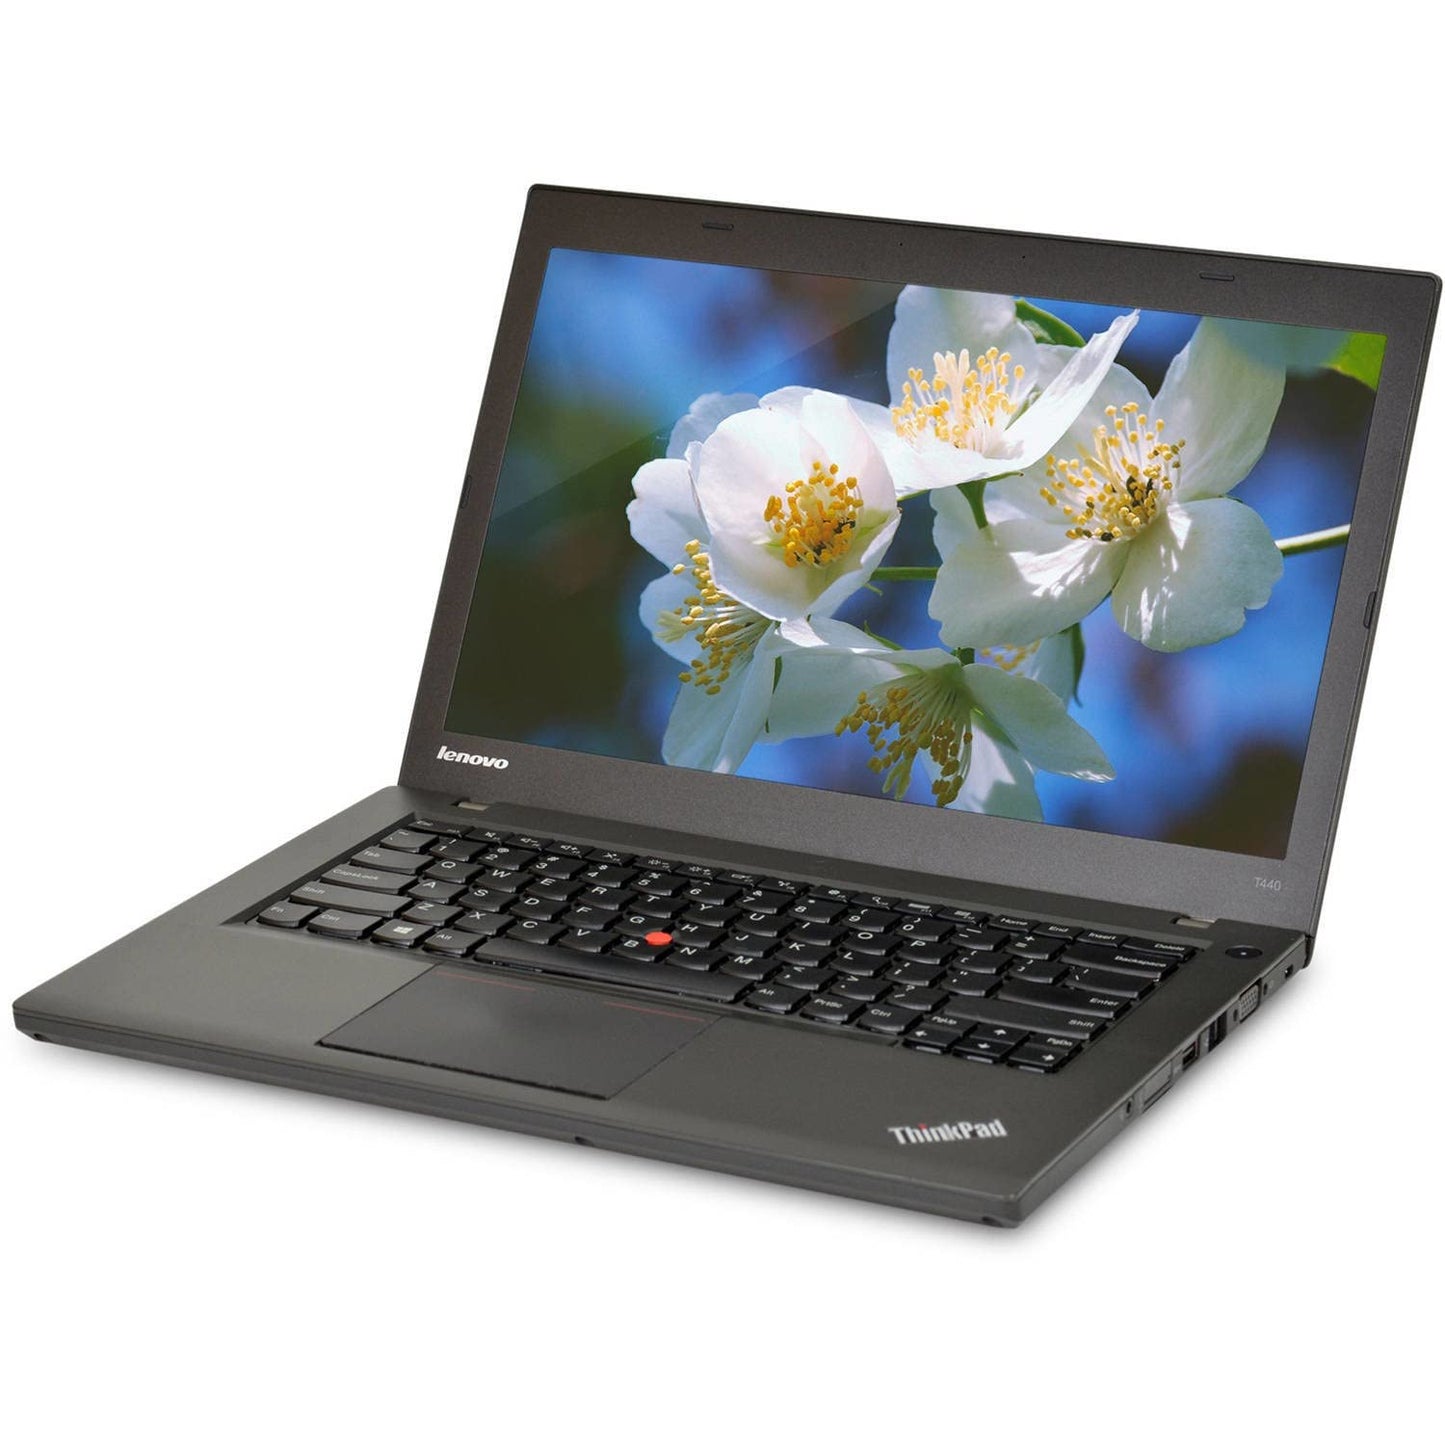 Lenovo (Renewed) T440 ThinkPad Laptop (Intel Core i5-4th Gen,8GB DDR3L RAM,256GB Ssd Hard,14.1in Display, Win 10 Pro)